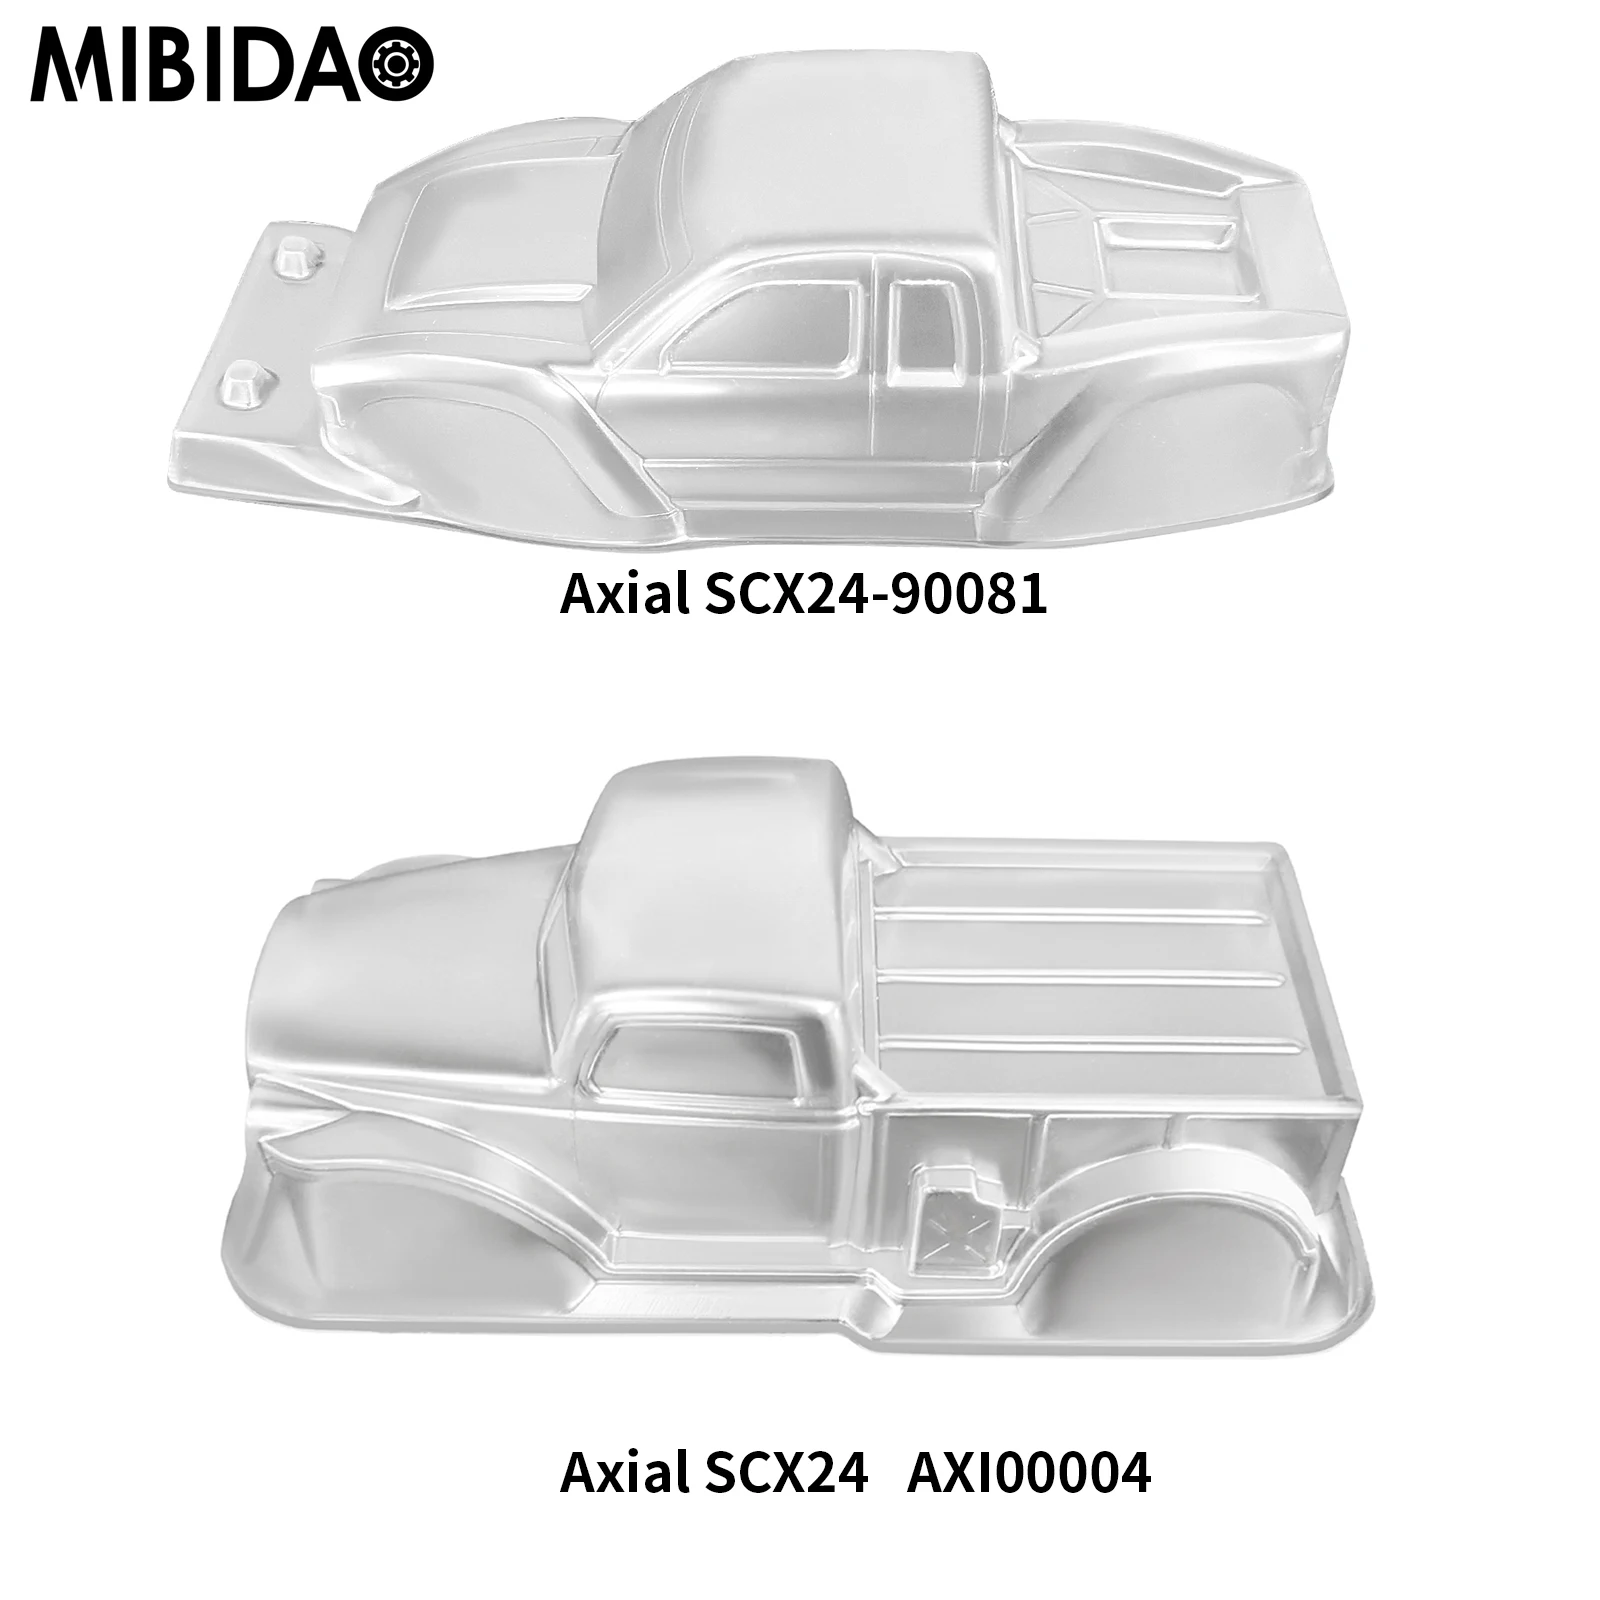 

MIBIDAO Plastic Clear Car Body Shell for Axial SCX24 90081 Deadbolt AXI00004 1/24 RC Crawler Car Truck Model Upgrade DIY Parts